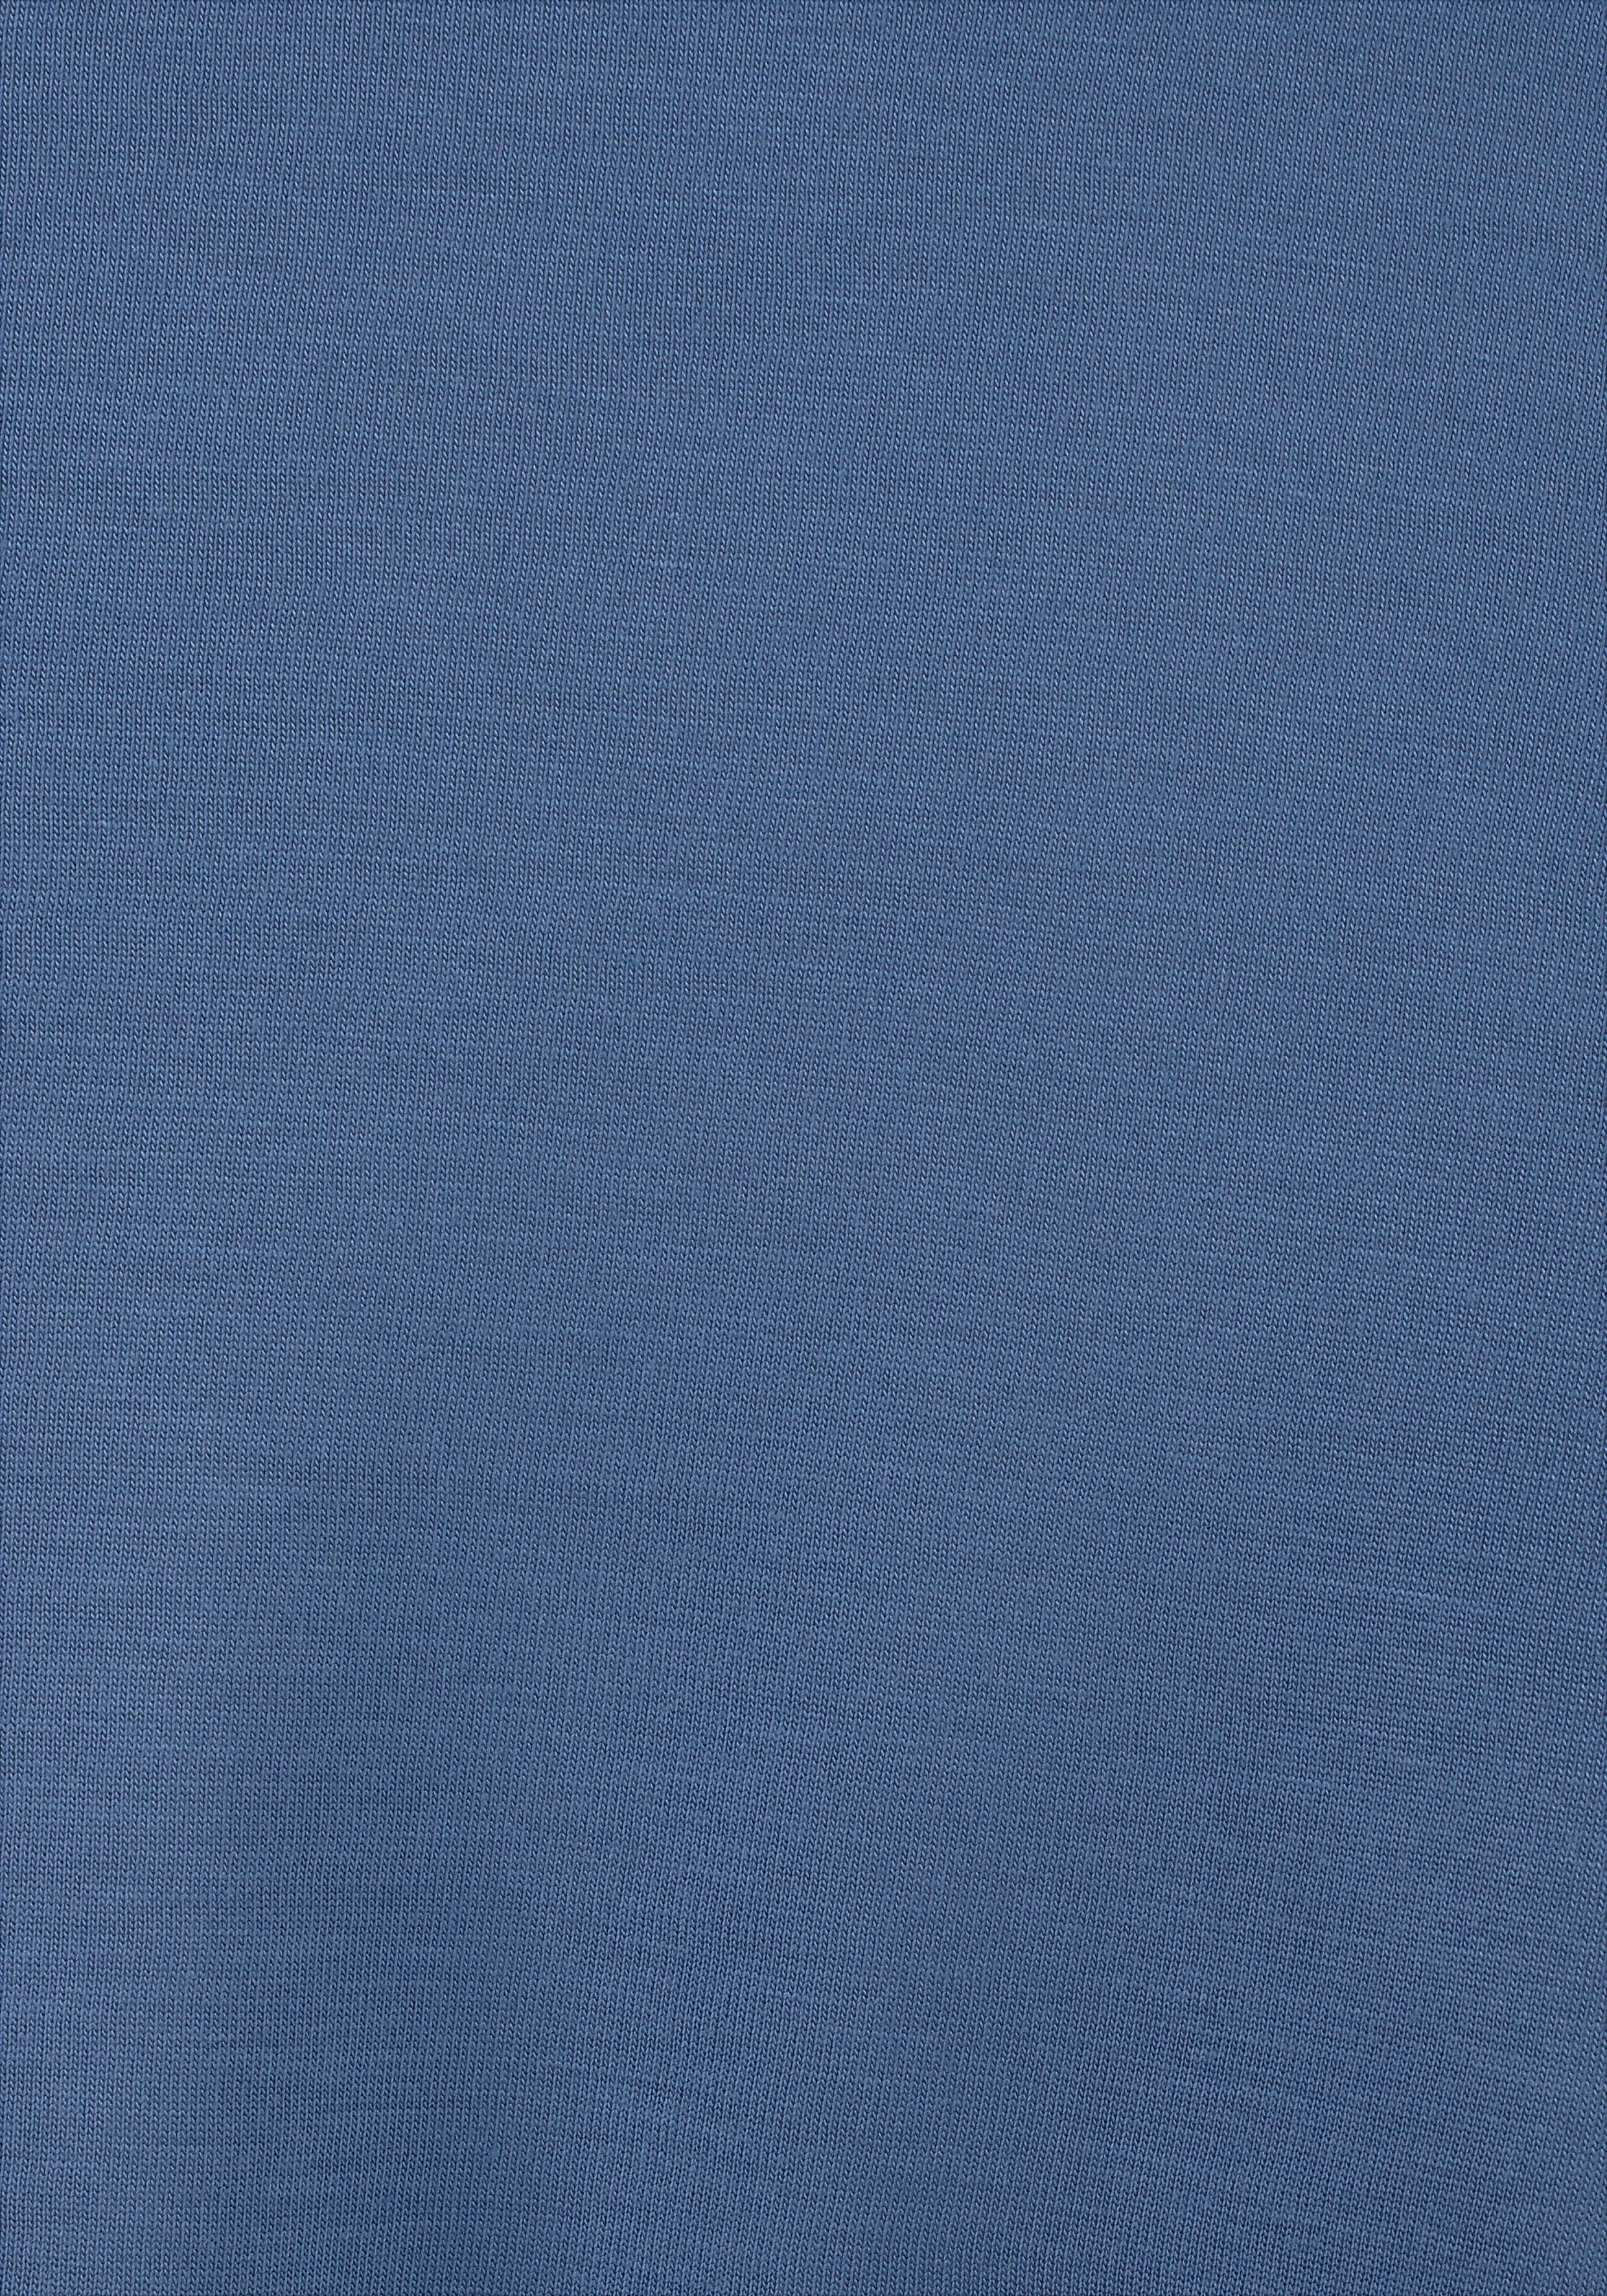 Beachtime Strandkleid aus weiß-türkis-blau Viskosejersey